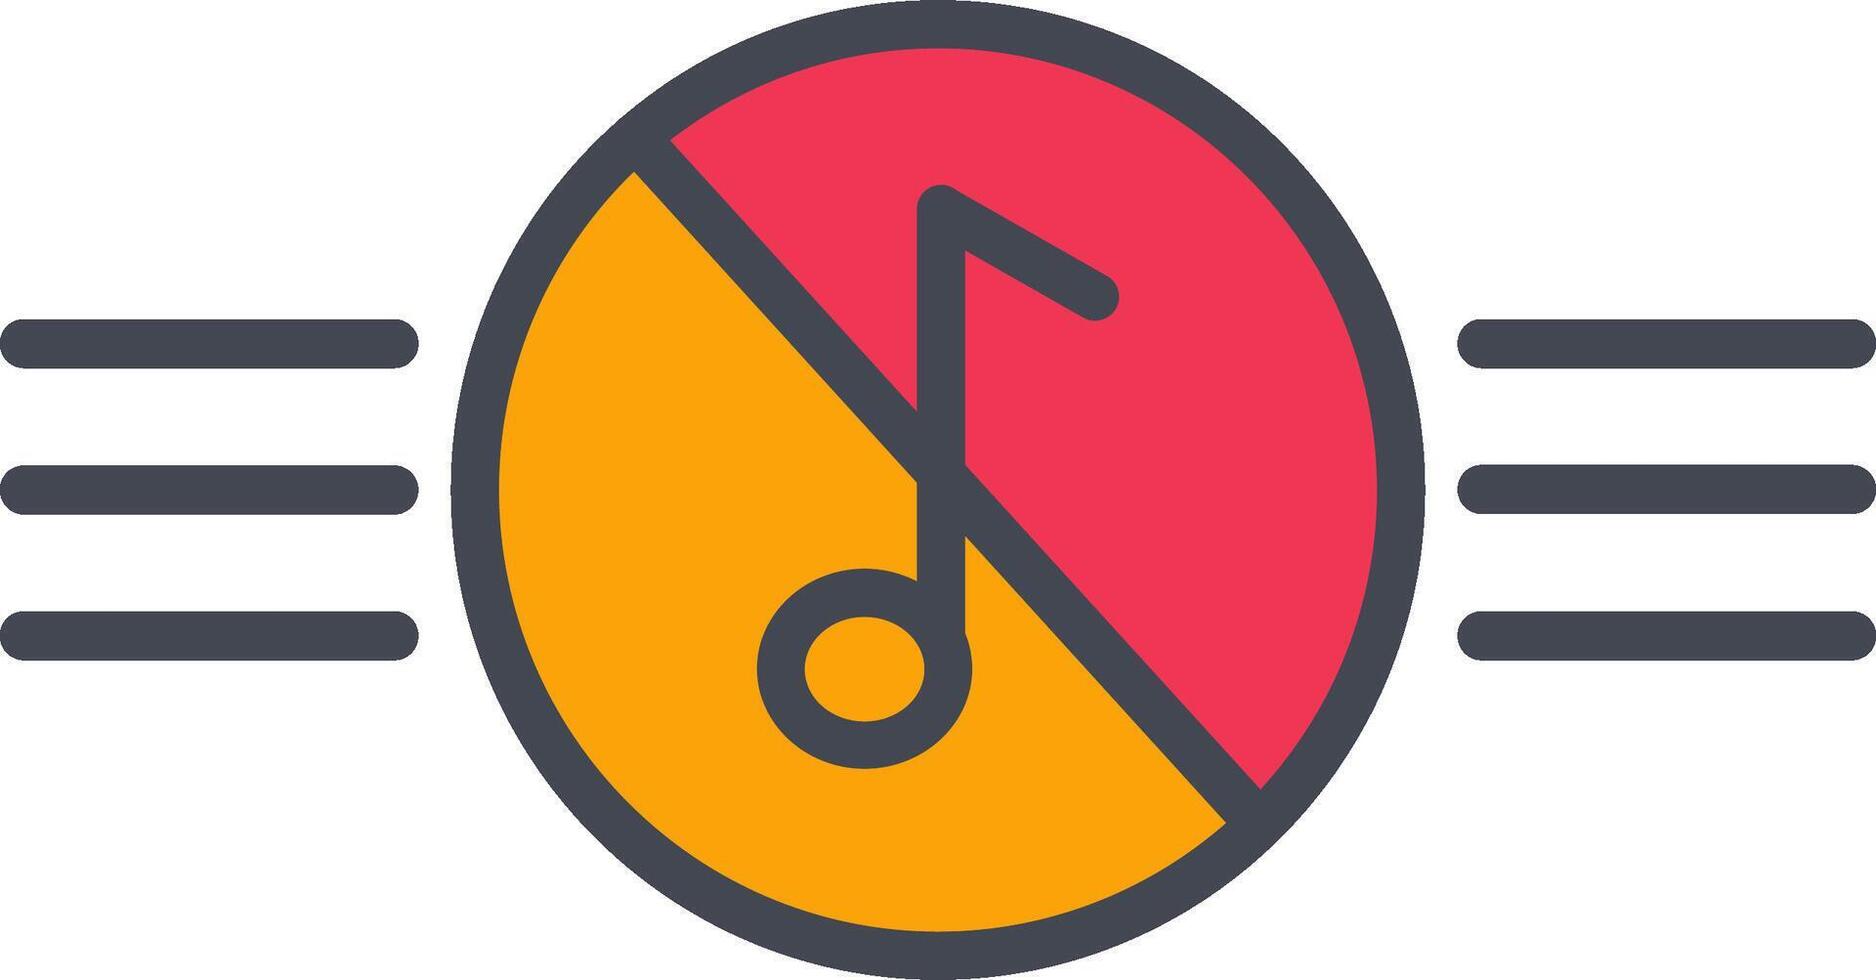 muziek- gehandicapt vector icoon